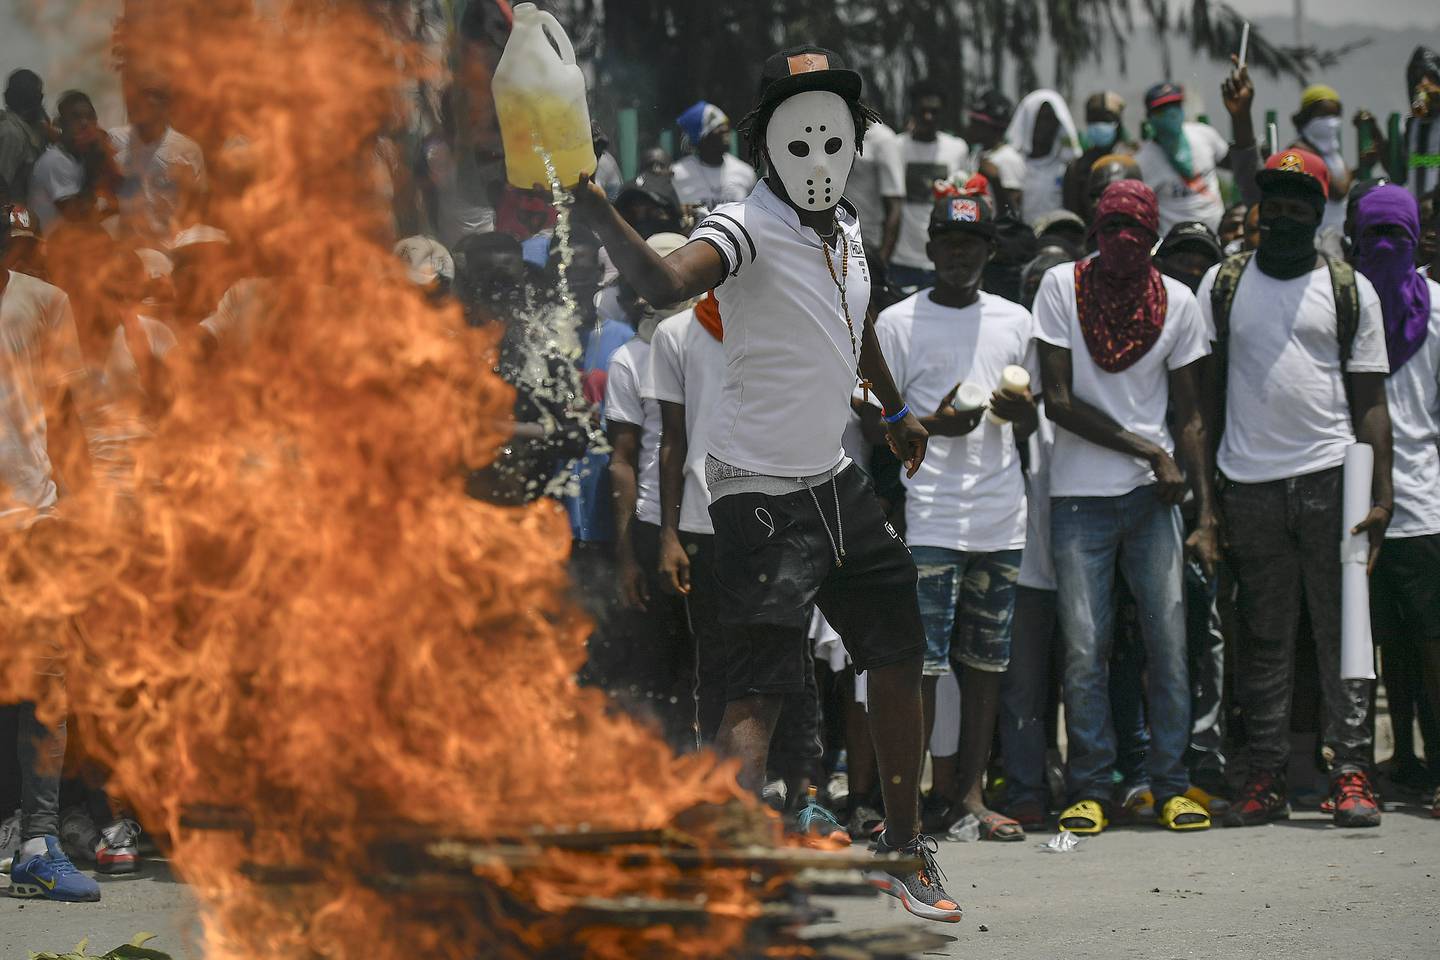 Denne maskerte mannen heller bensin på bålet både i konkret og overført betydning. Han og mange tusen demonstranter tok til gatene i Haiti etter at landets president Jovenel Moise ble skutt og drept i fjor. Demonstrantene krevde at kreftene bak drapet skulle stilles til ansvar.